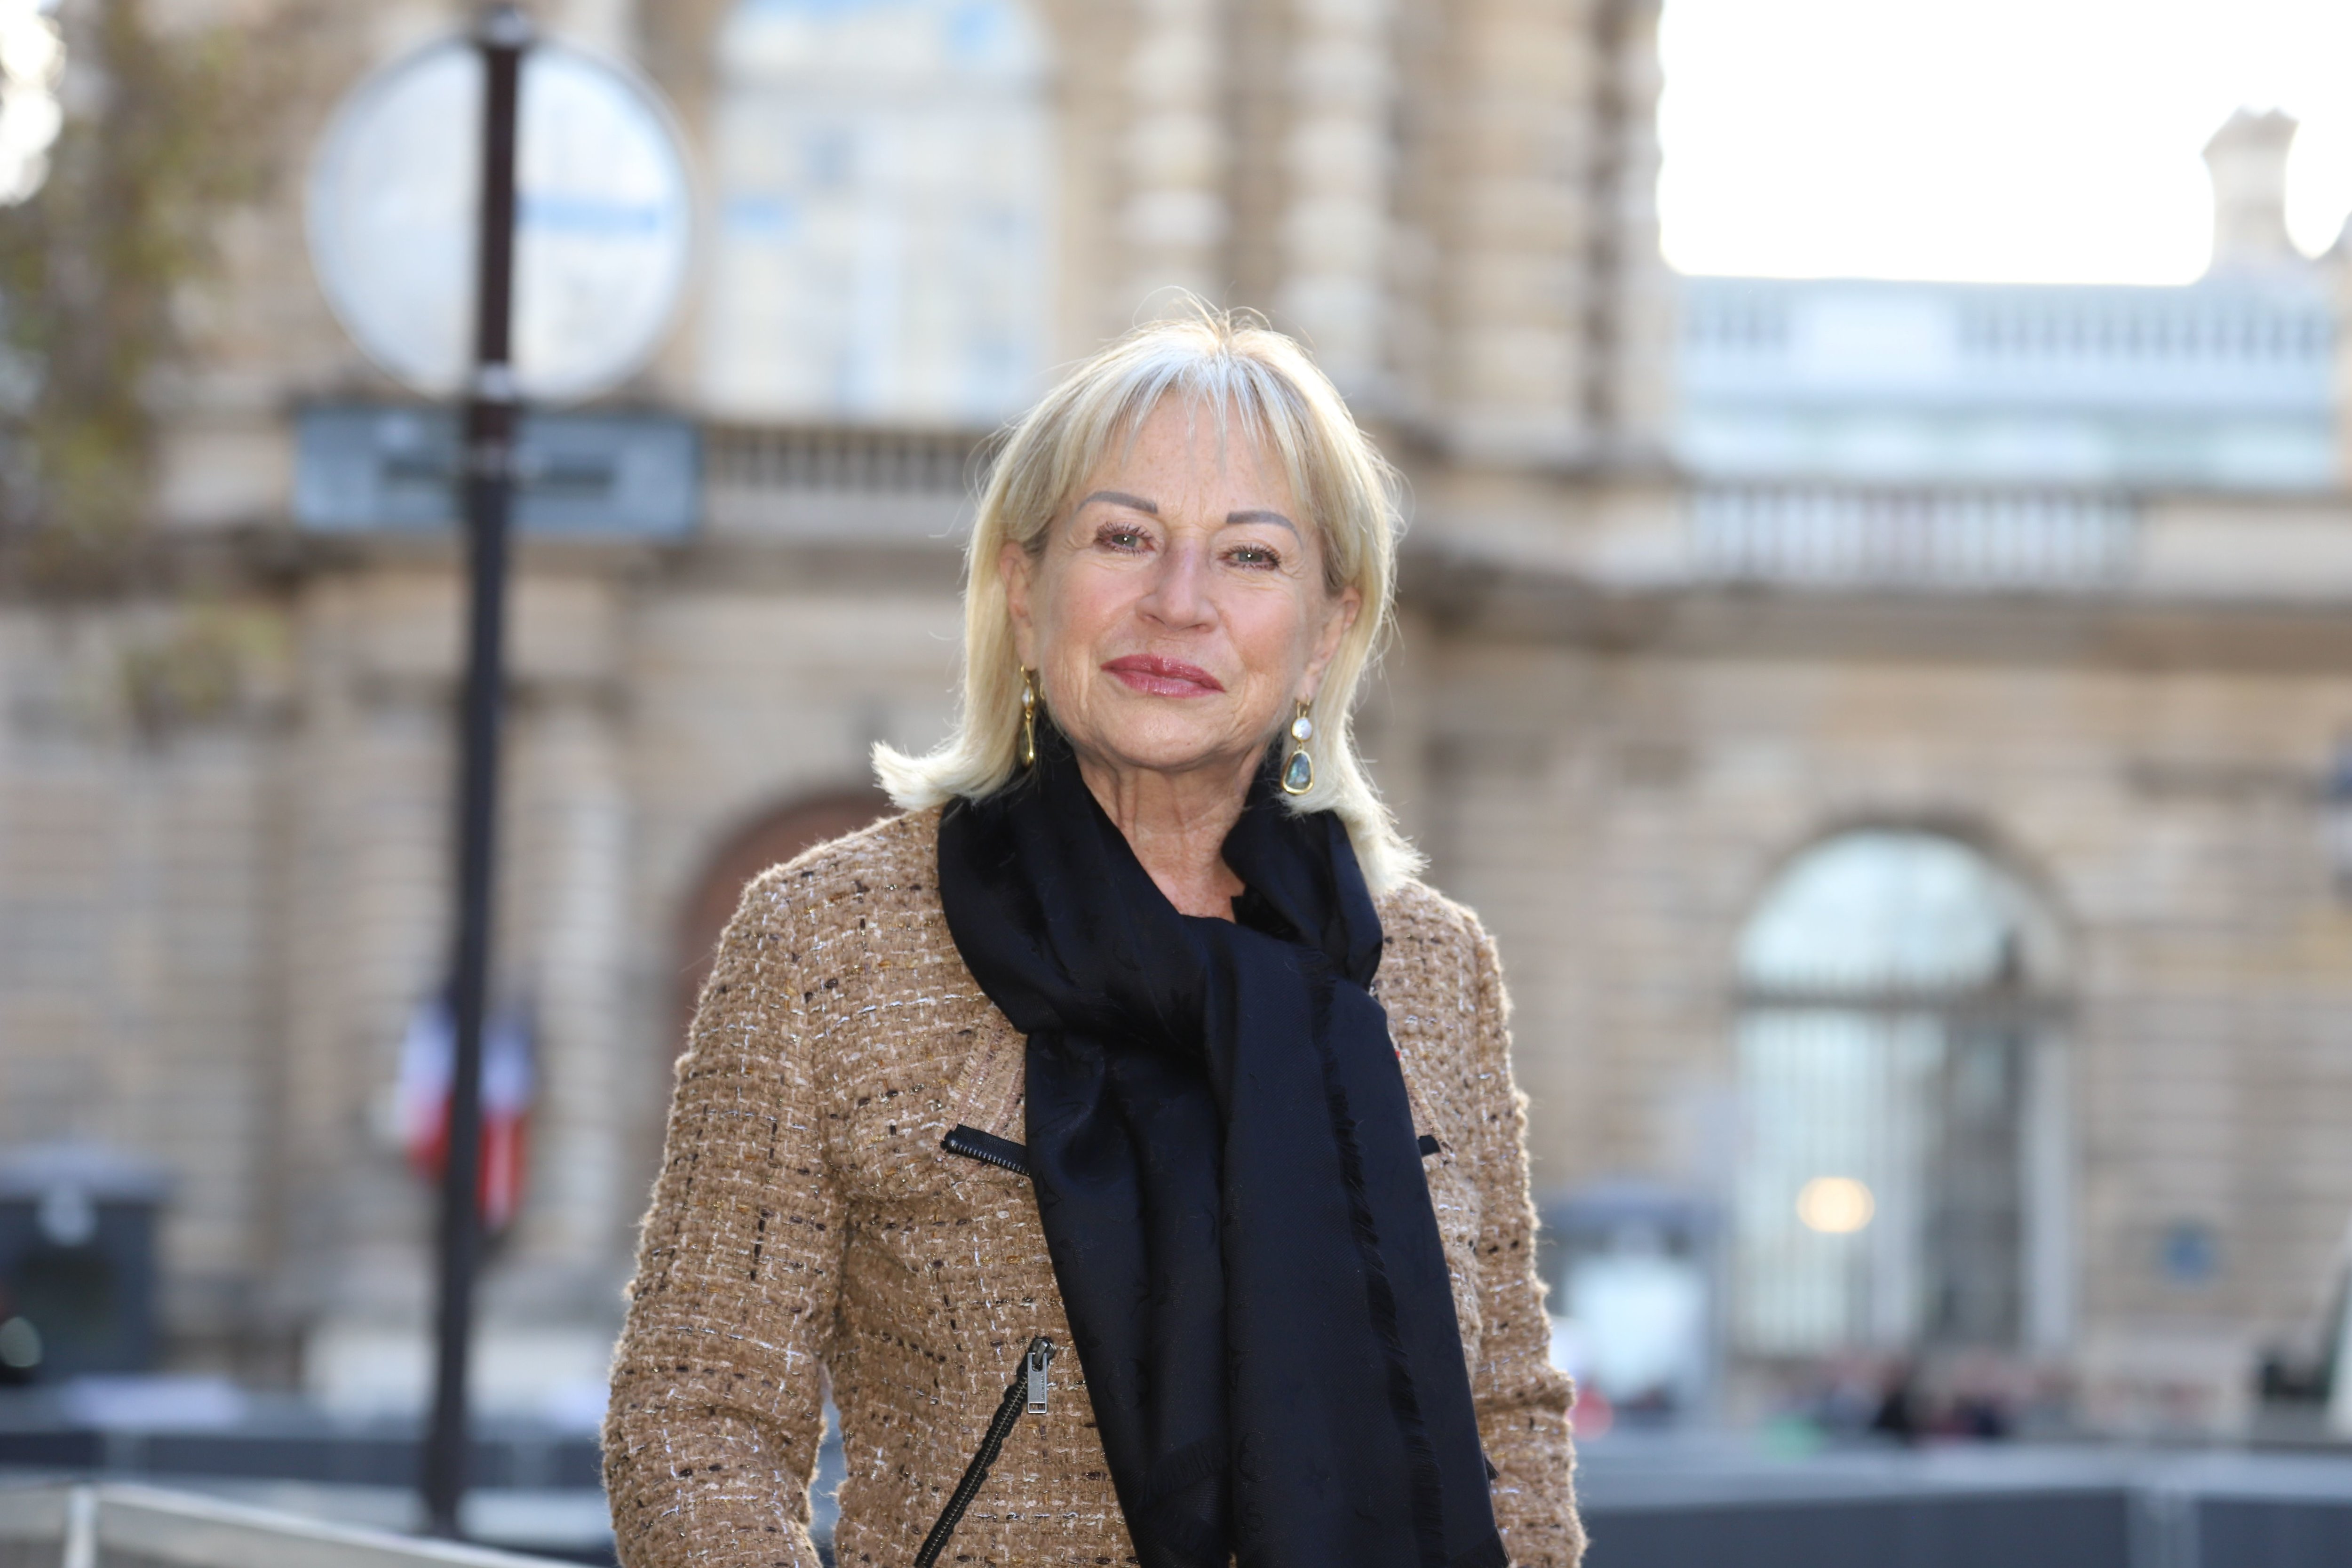 La sénatrice (LR) Catherine Dumas est la nouvelle présidente du groupe Changer Paris au Conseil de la capitale. Elle succède à Rachida Dati, la maire (LR) du VIIe, qui a rejoint le gouvernement. DR